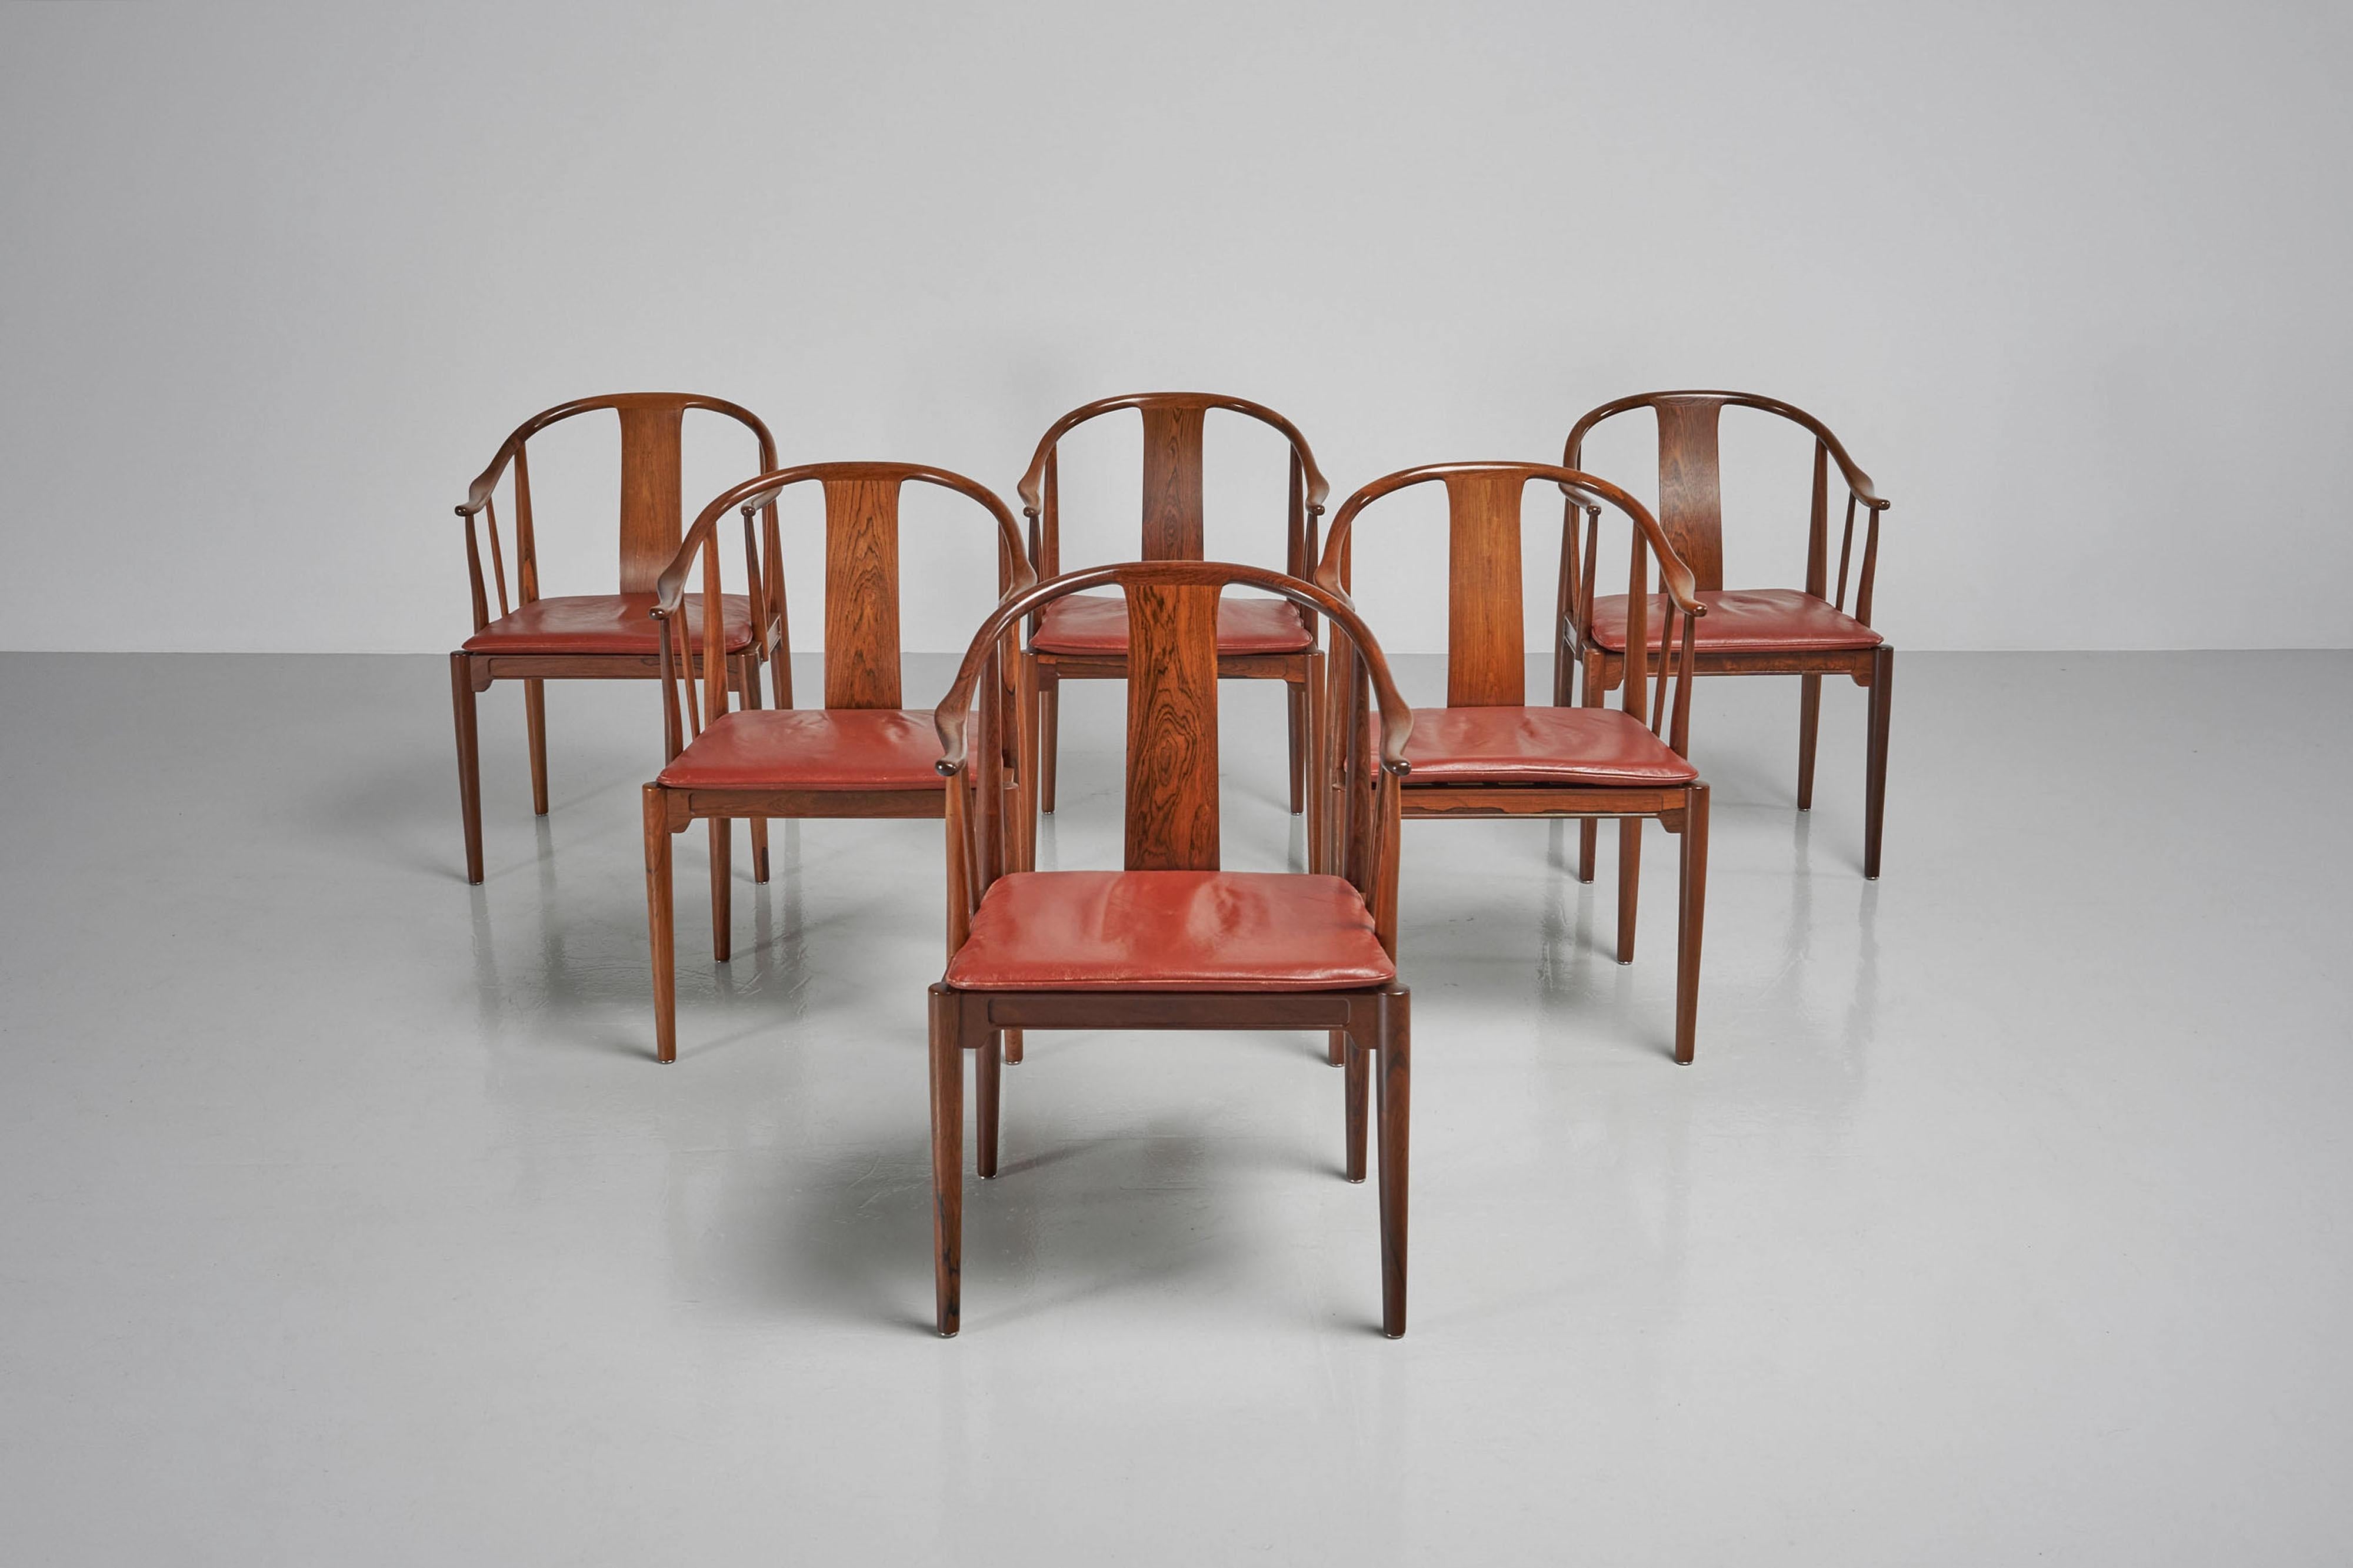 Außergewöhnliche China-Stühle von Hans Wegner aus dem Jahr 1944, die 1967 von Fritz Hansen in Dänemark hergestellt wurden. Dieser Satz von 6 Stühlen aus massivem Palisanderholz ist ein unglaublich seltener Fund. Frühe Versionen aus Palisanderholz